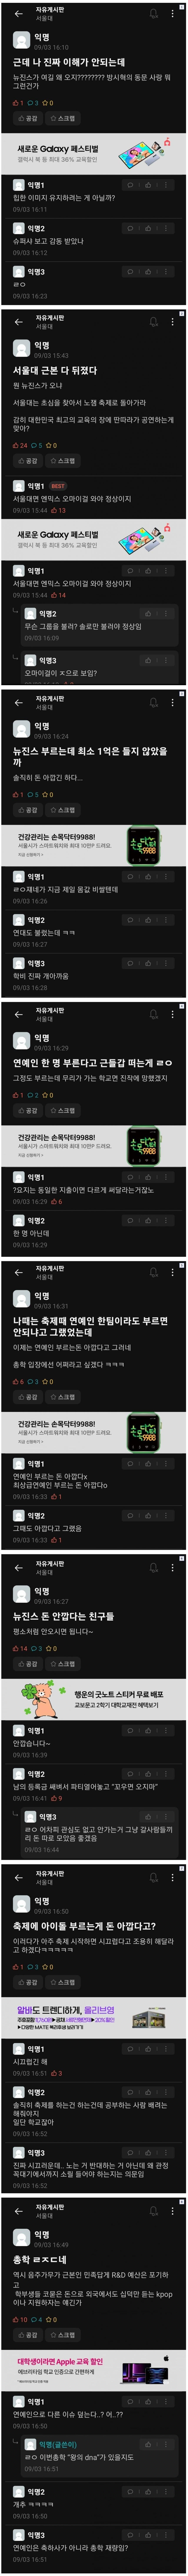 서울대생들 뉴진스 박재범 초청에 분노중